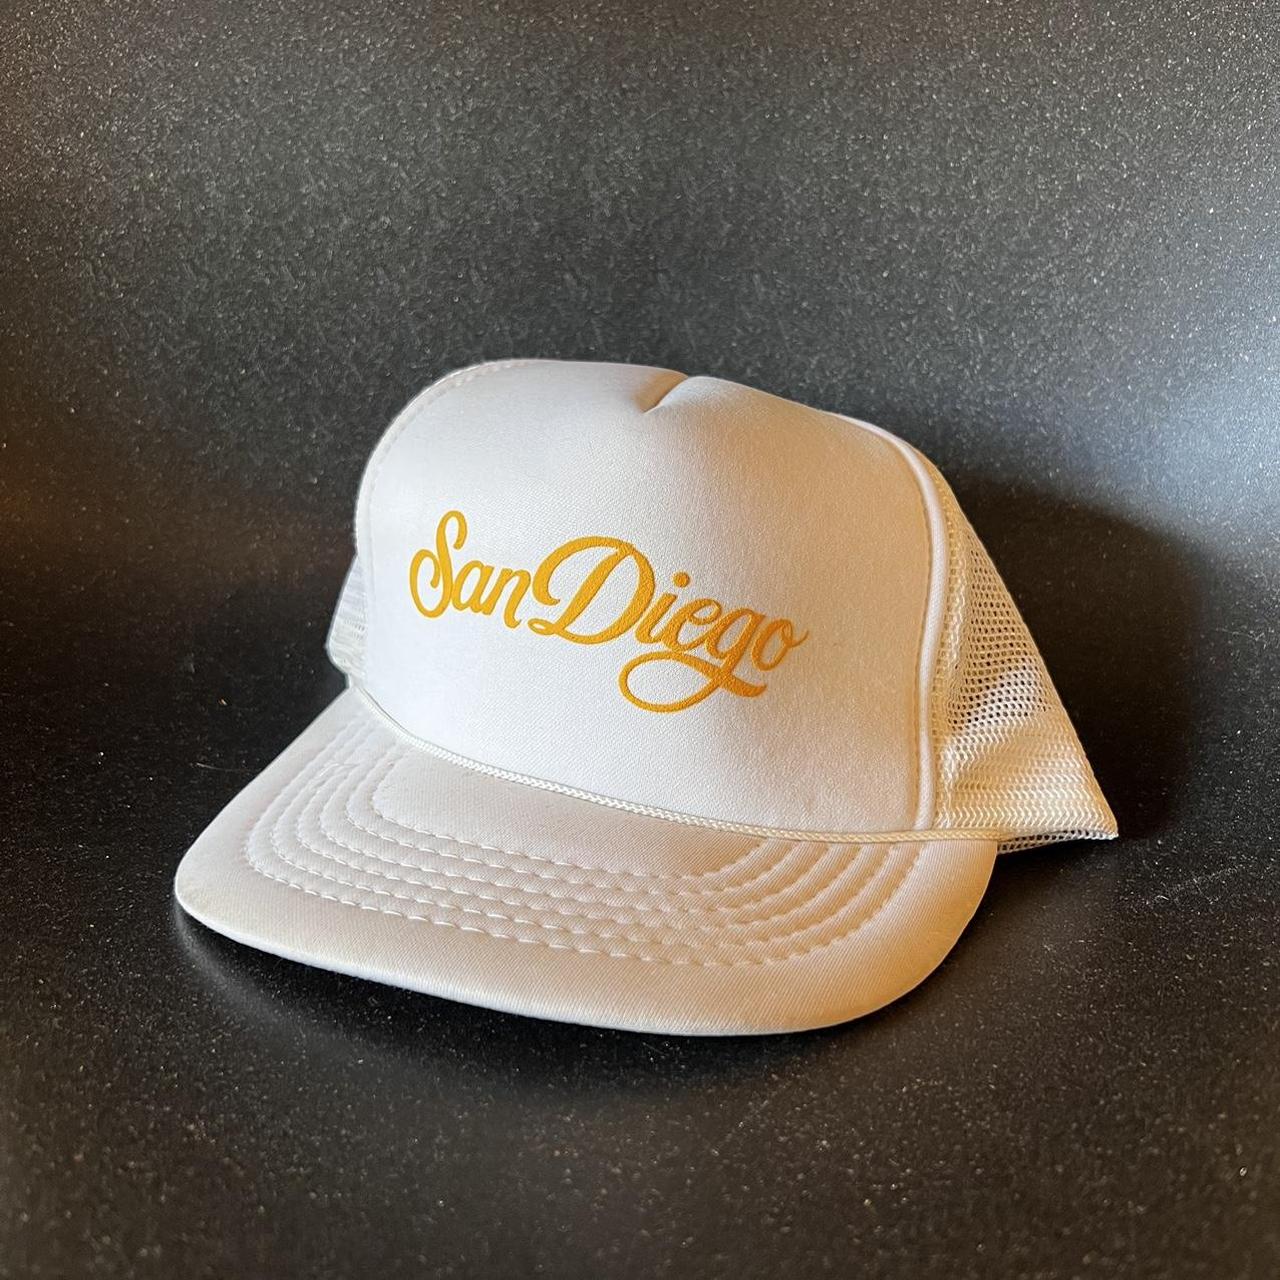 Vintage San Diego Trucker Hat